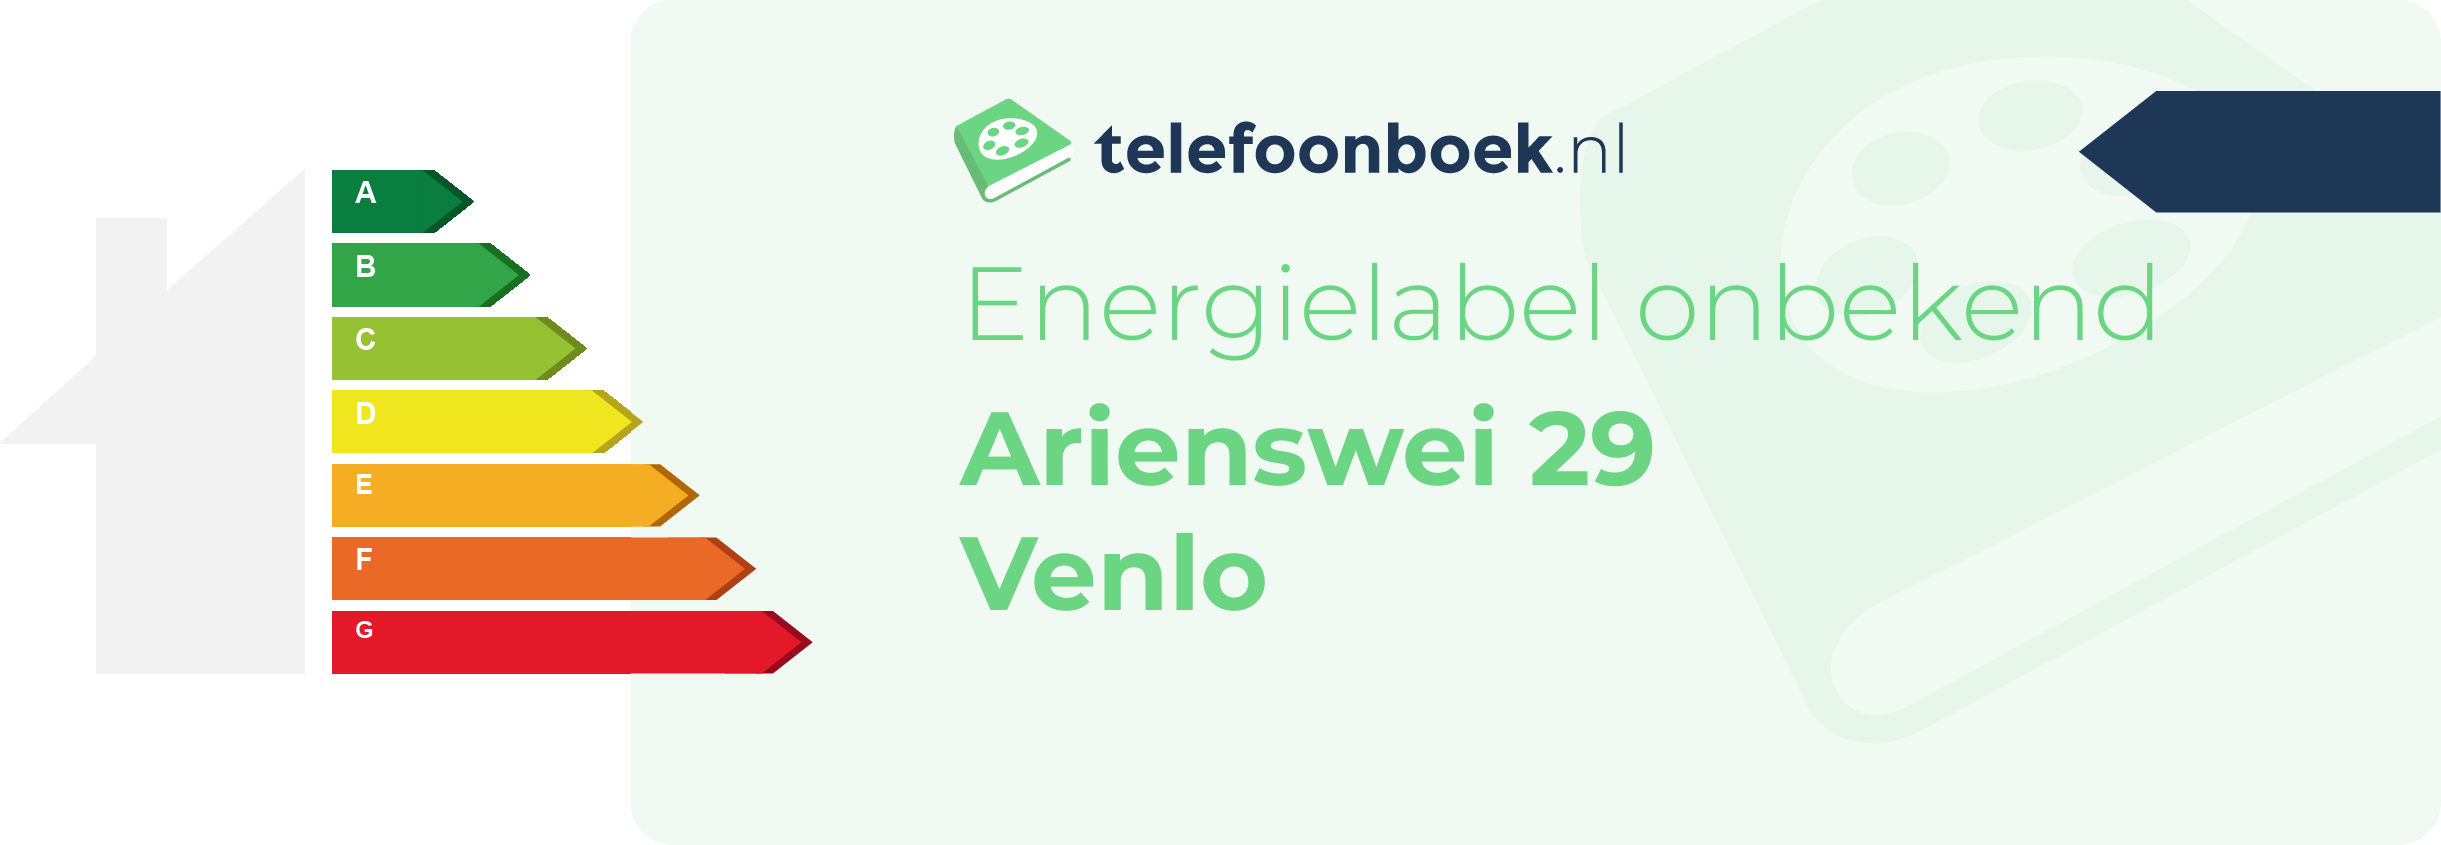 Energielabel Arienswei 29 Venlo